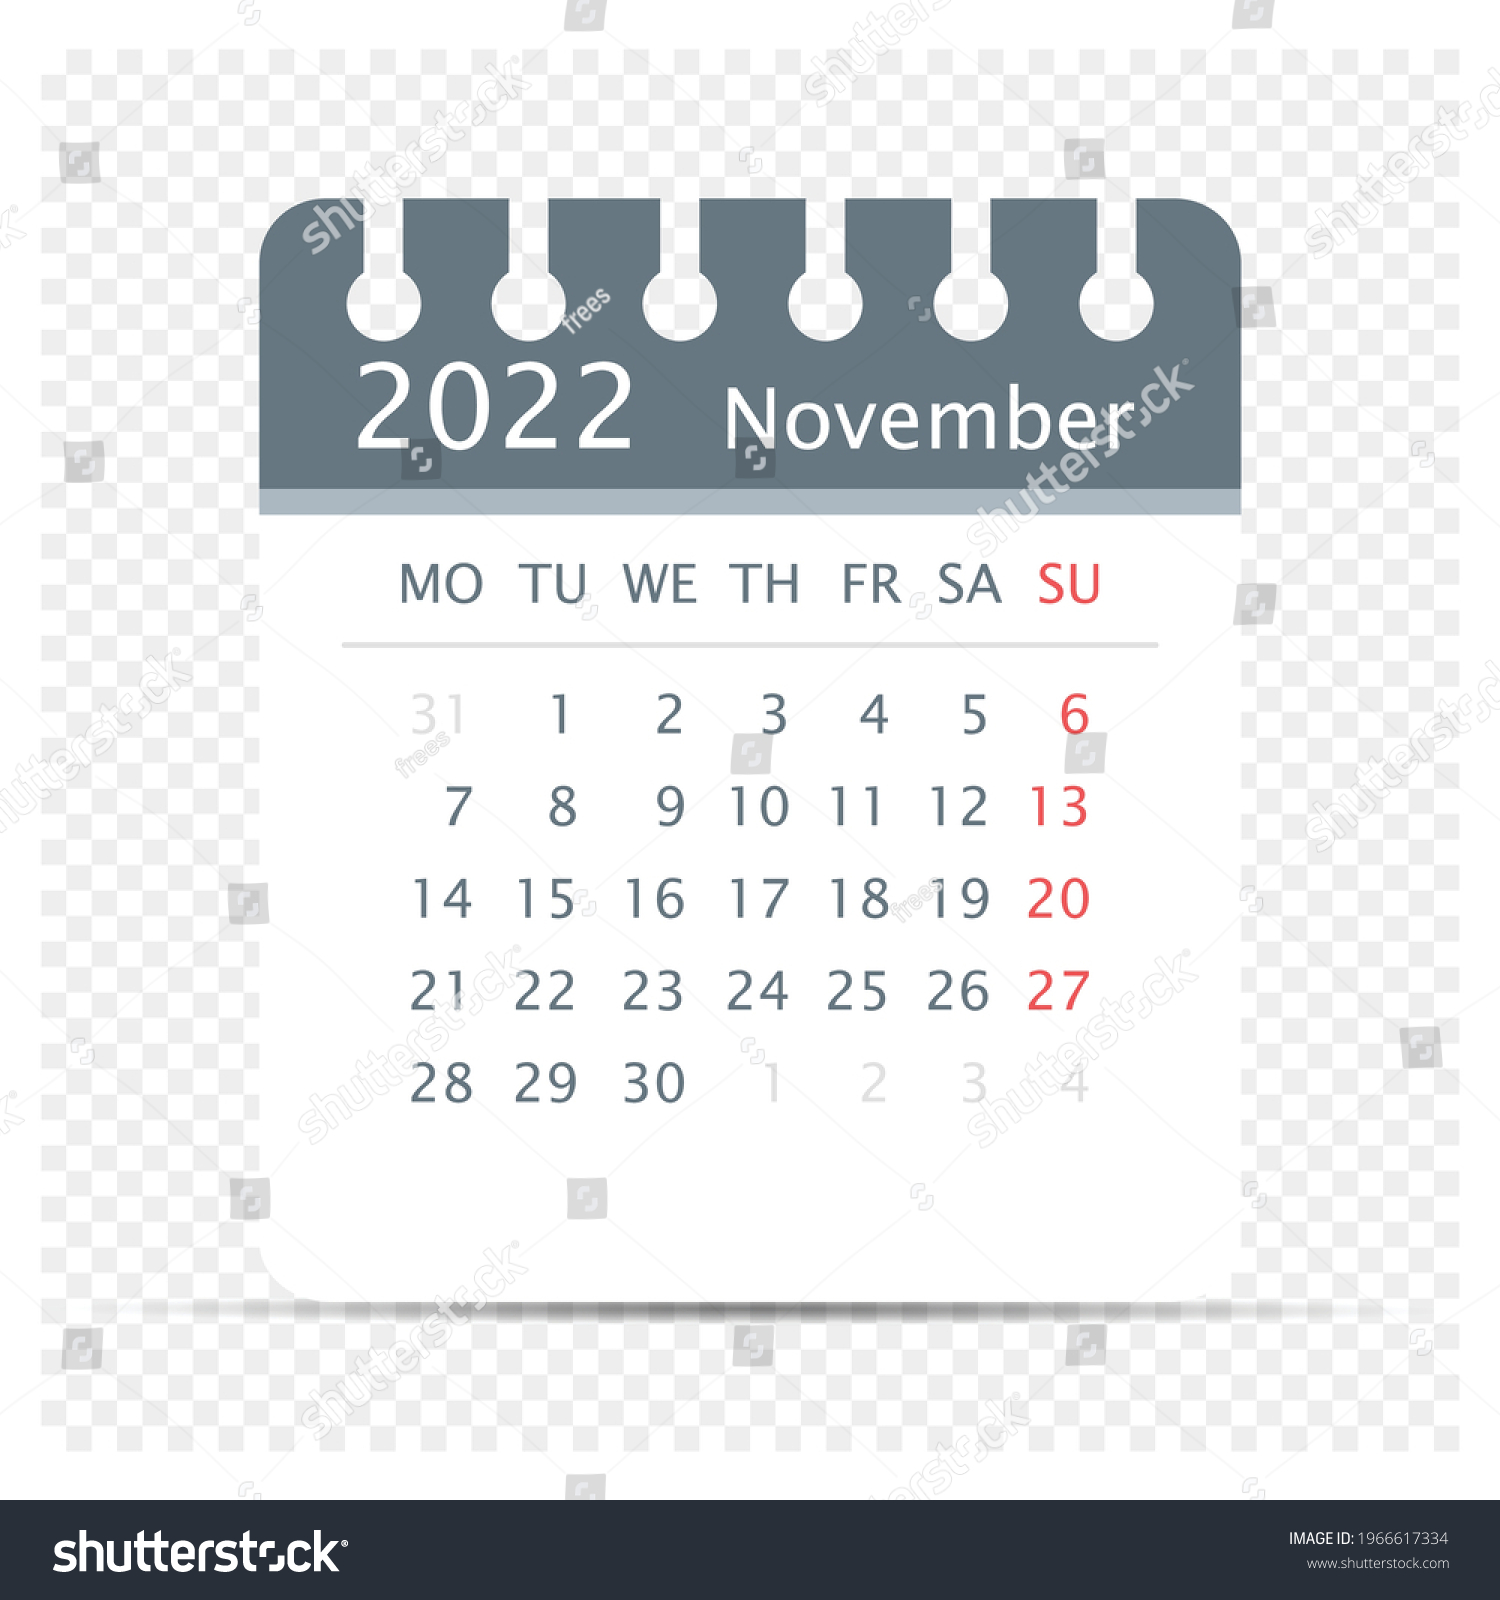 November 6 2022 Calendar November 2022 Calendar Icon Extra Days Stock Vector (Royalty Free)  1966617334